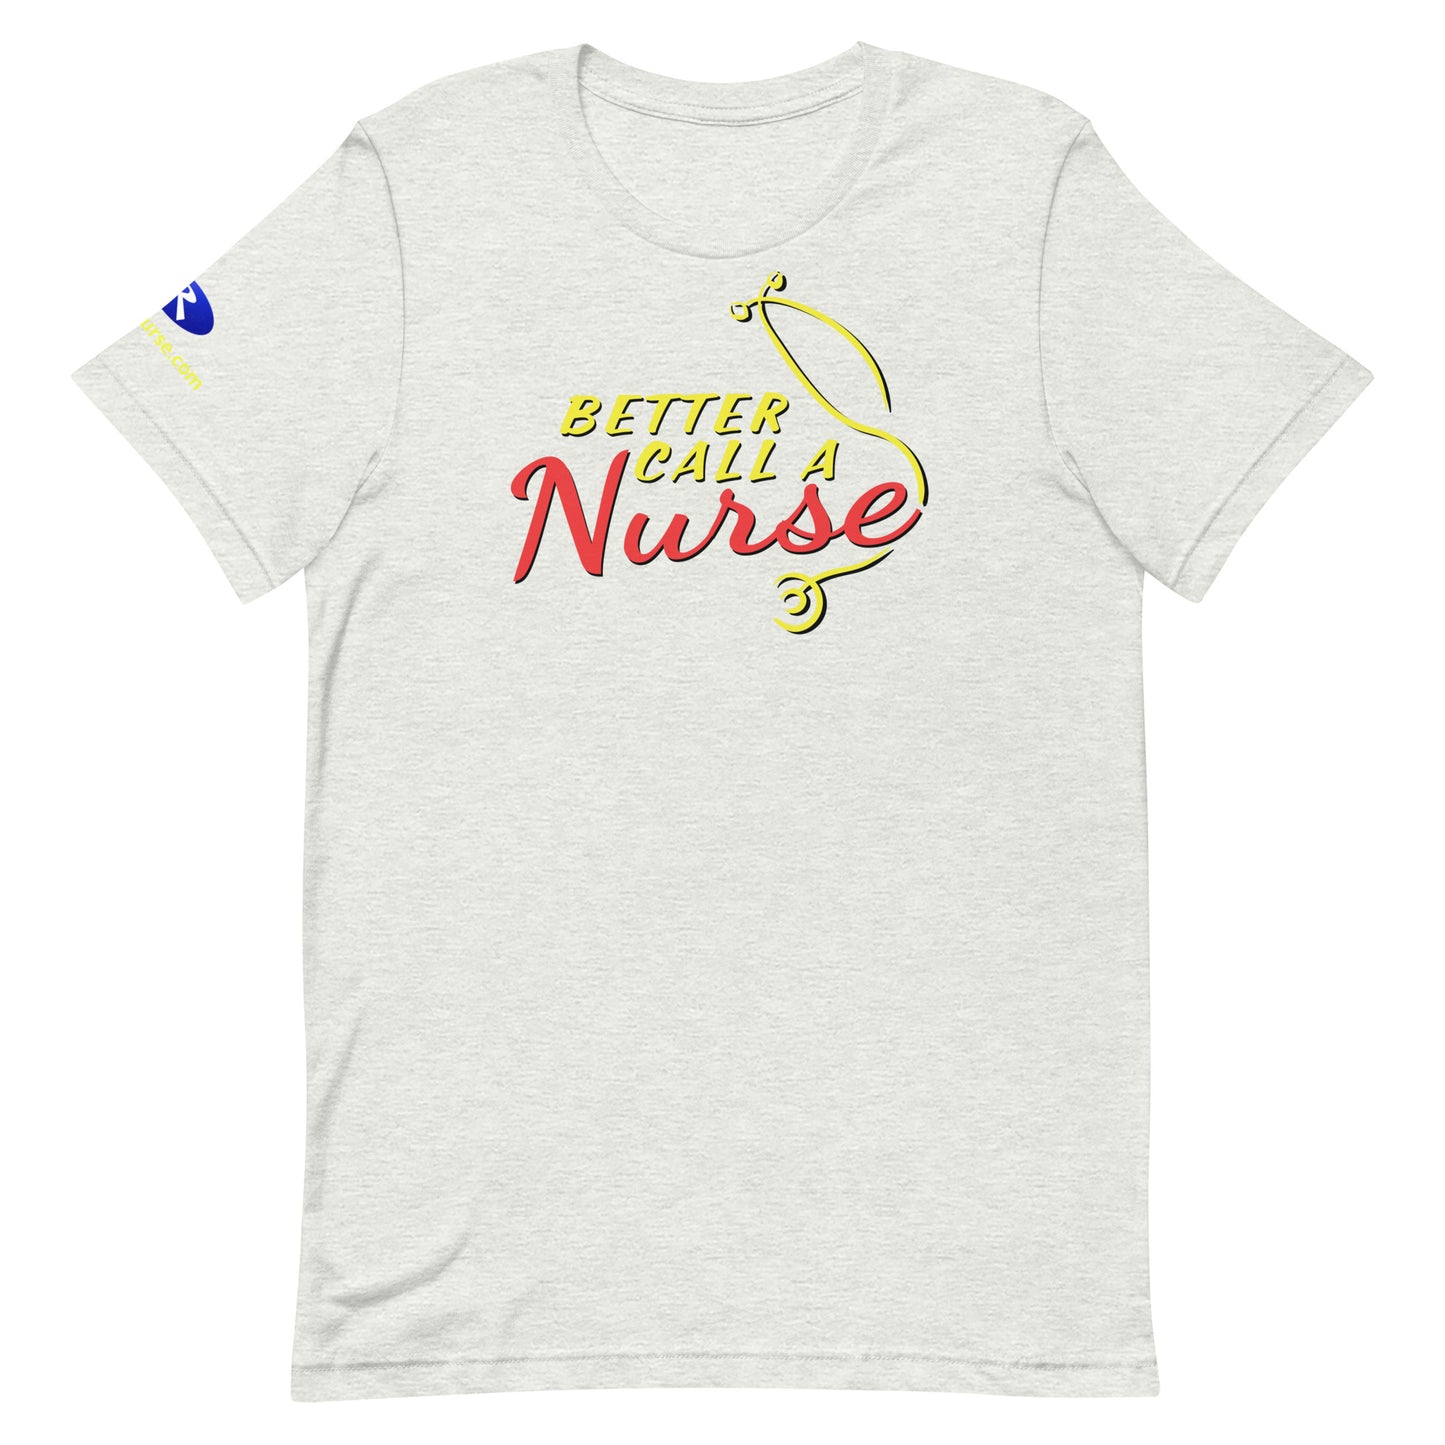 Better Call a Nurse! (Unisex Fit T-Shirt)